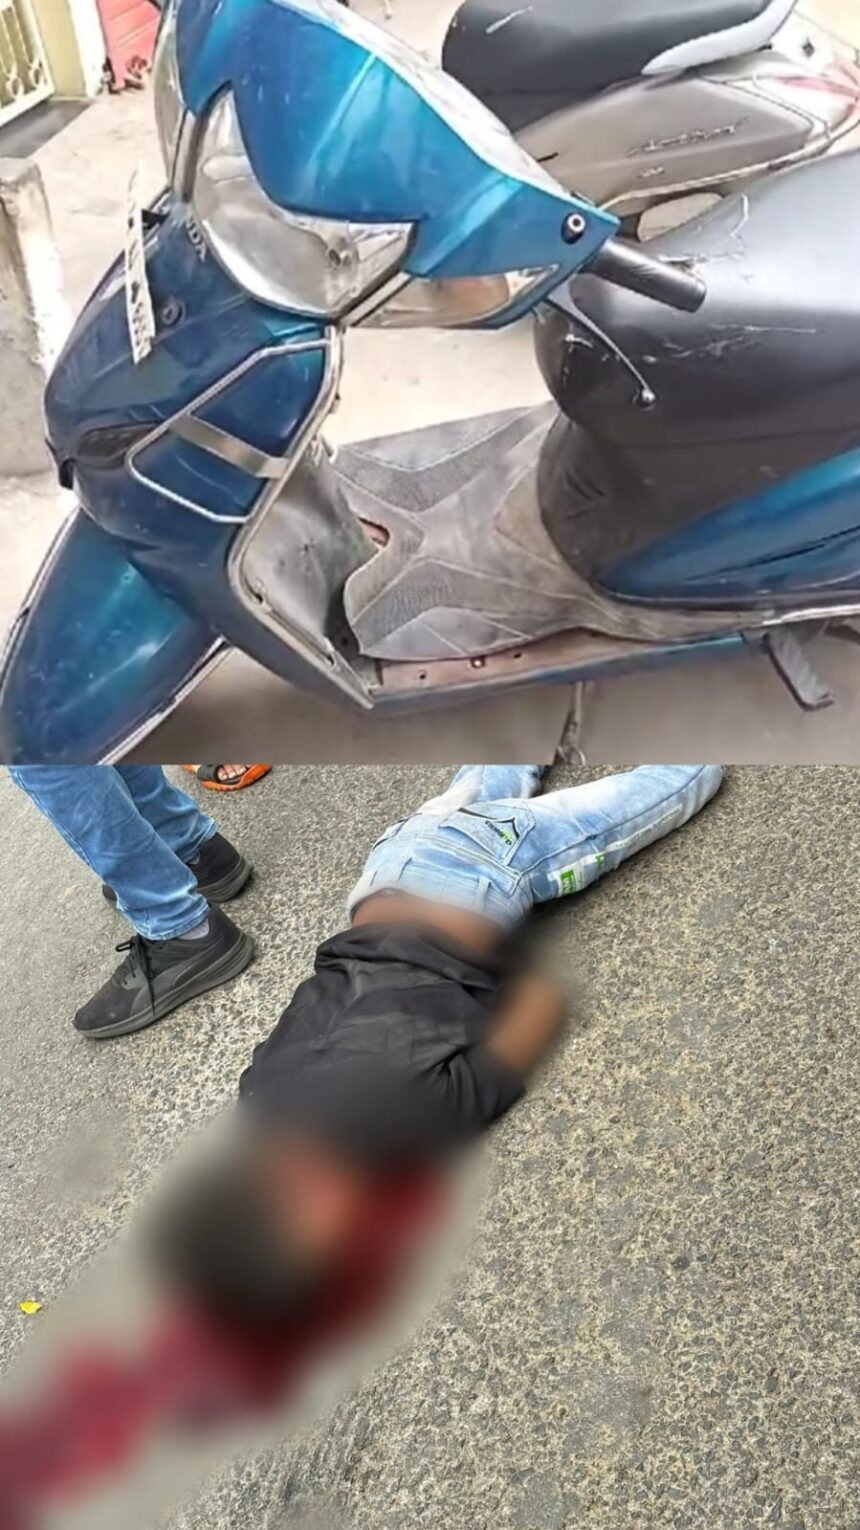 CG VIDEO : बस के पहिए के नीचे दबने से स्कूटी सवार 13 साल के बच्चे की दर्दनाक मौत, देखें CCTV फुटेज  